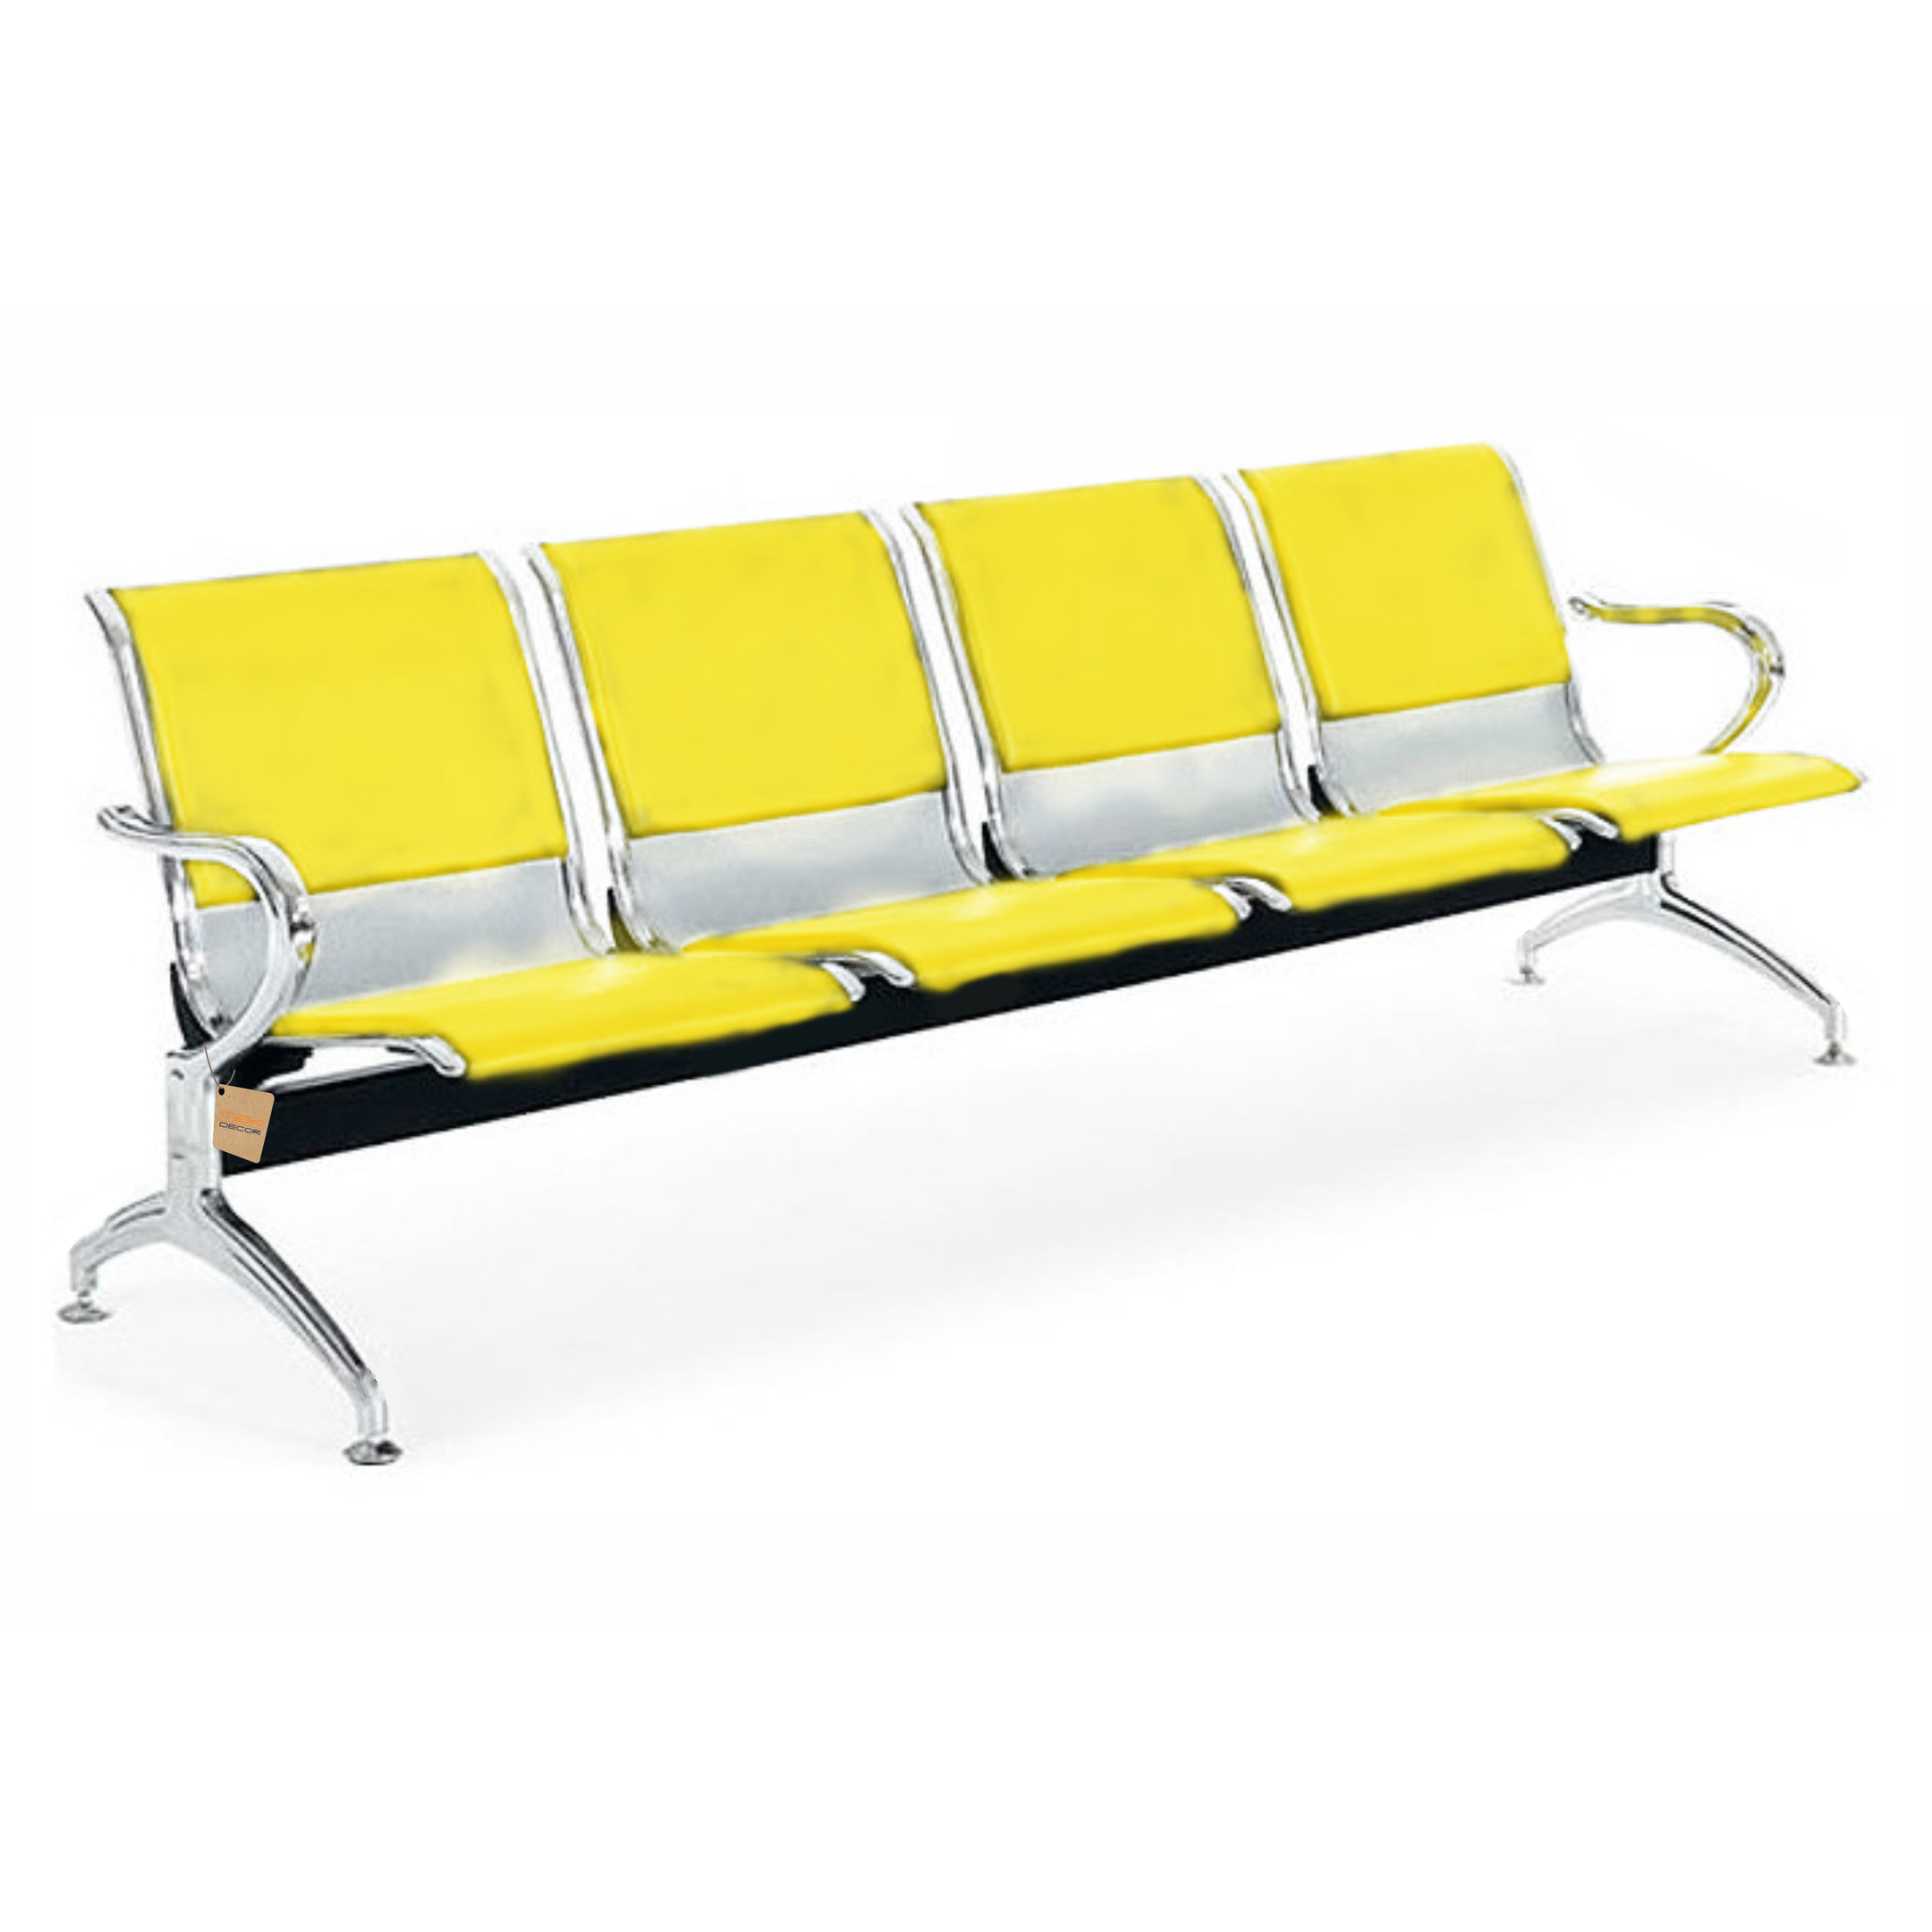 Cadeira Longarina 4 Lugares Com Estofado Colors: Amarelo